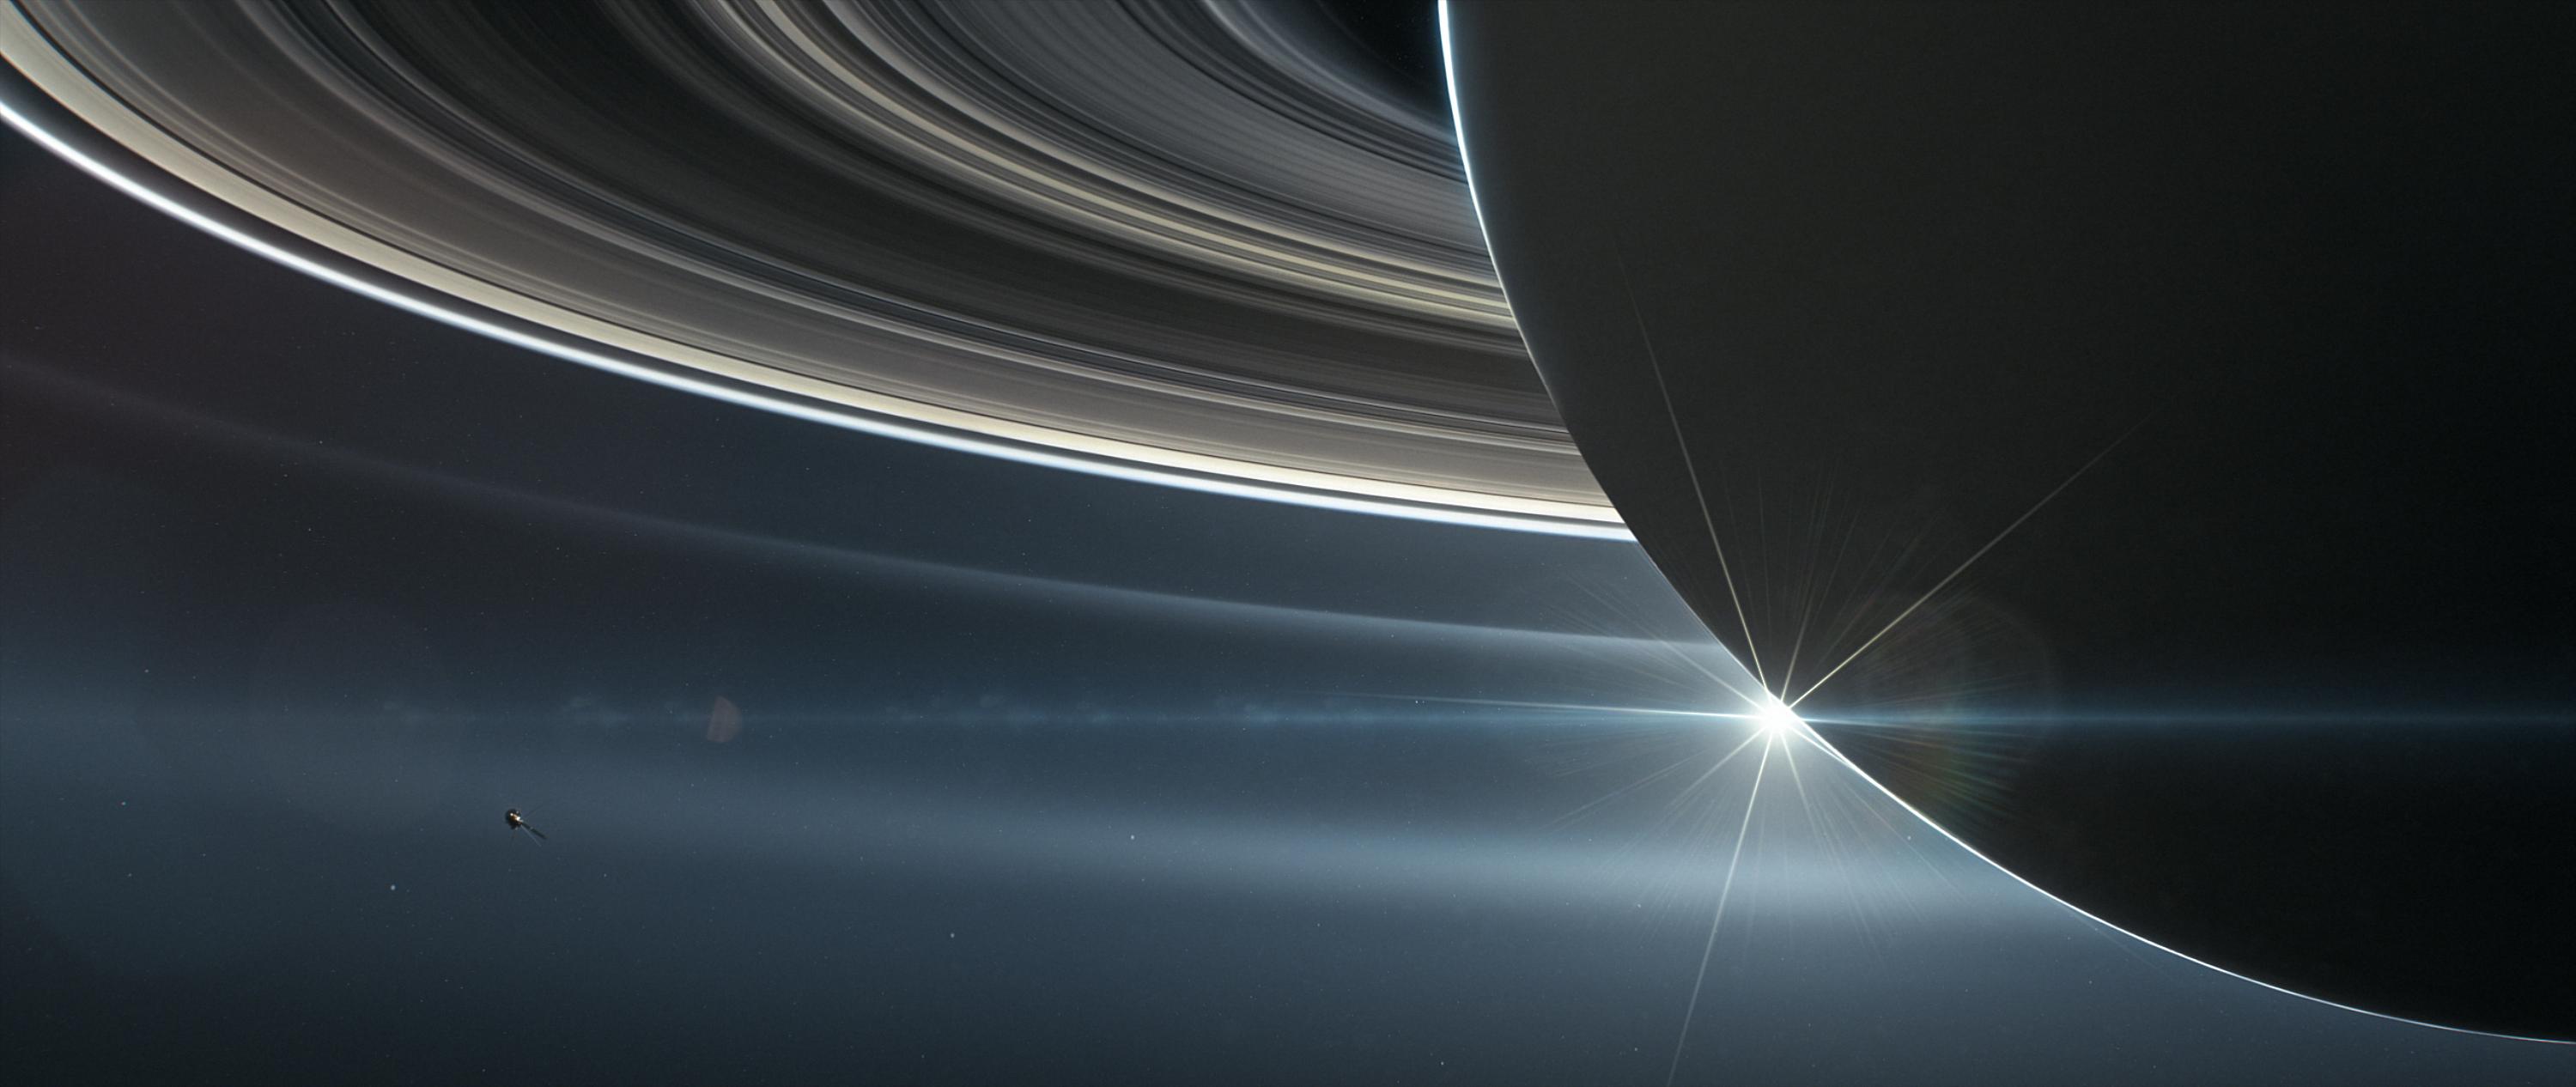 19 01 18 カッシーニの観測により土星の環が比較的新しいこと